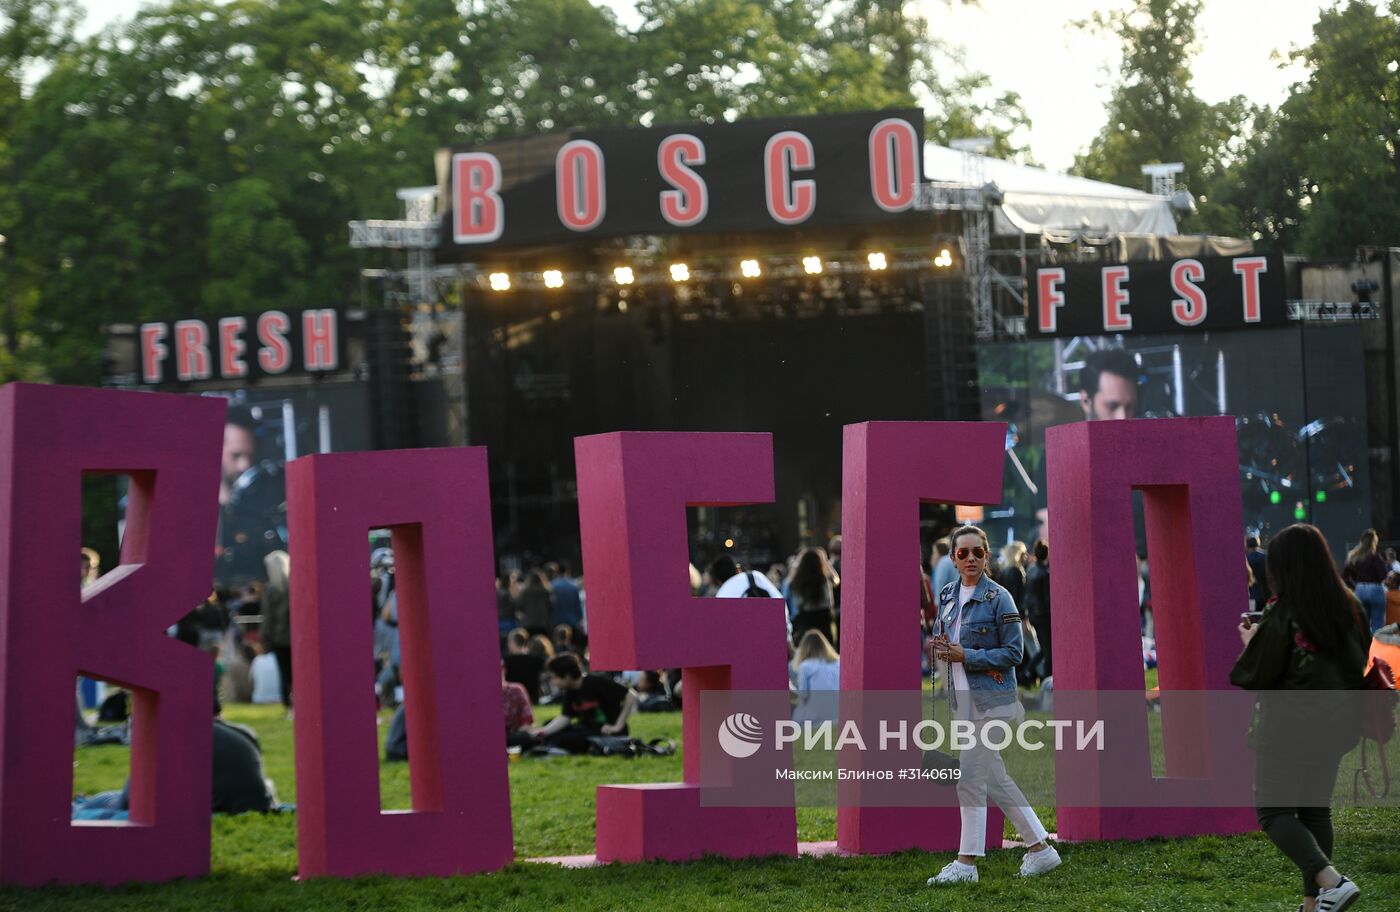 Фестиваль "Bosco Fresh Fest 2017". День второй